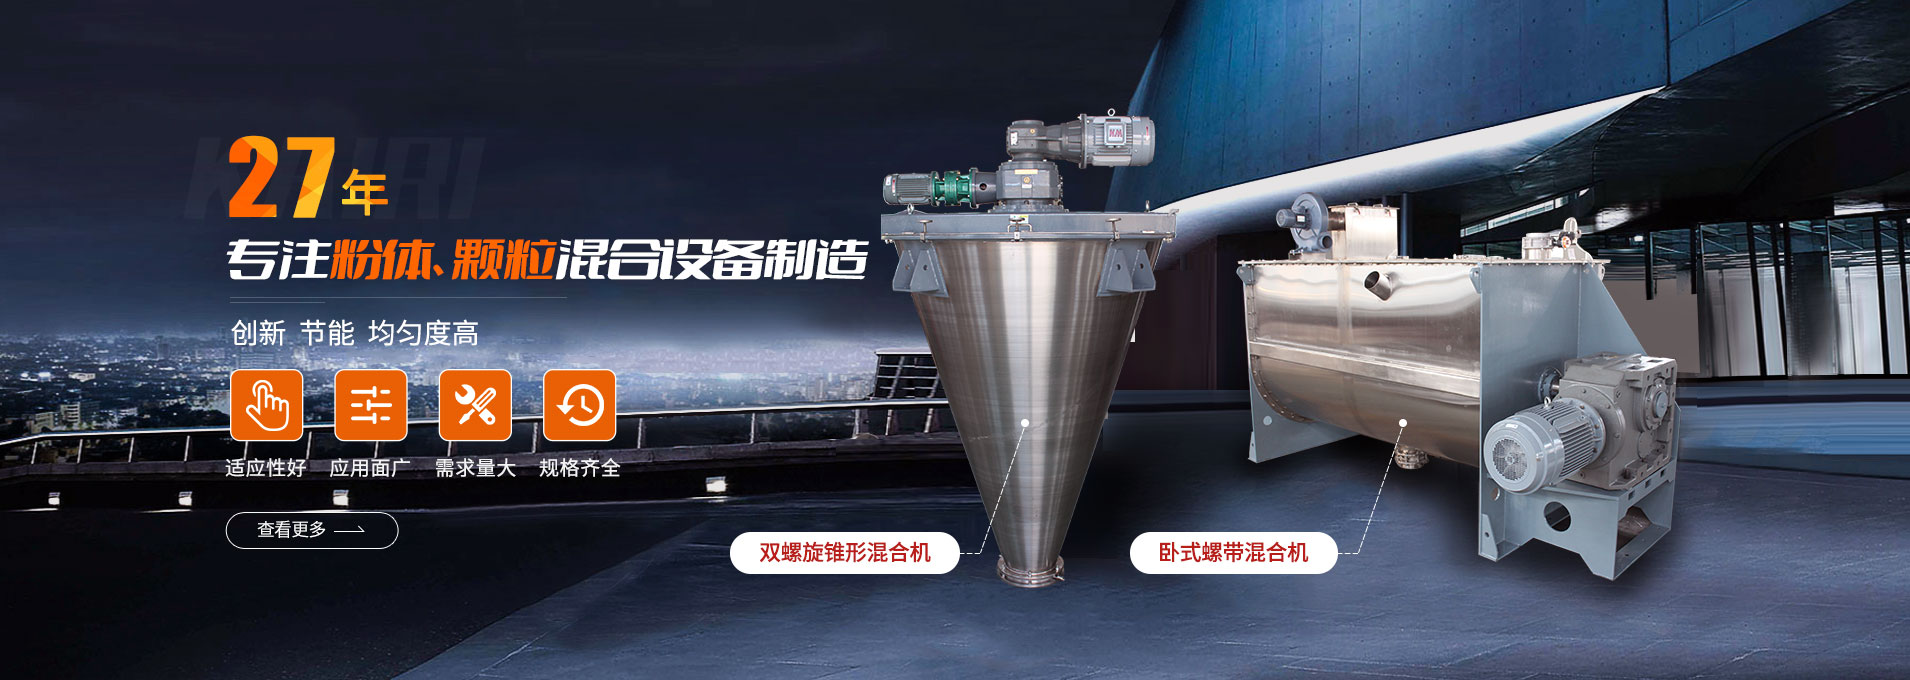 上海凯日专注生产双/三螺旋锥形混合机、卧式螺带混合机、犁刀式合机、无重力混合机、螺带式锥形混合机、连续式混合机、混料机、搅拌机等产品。